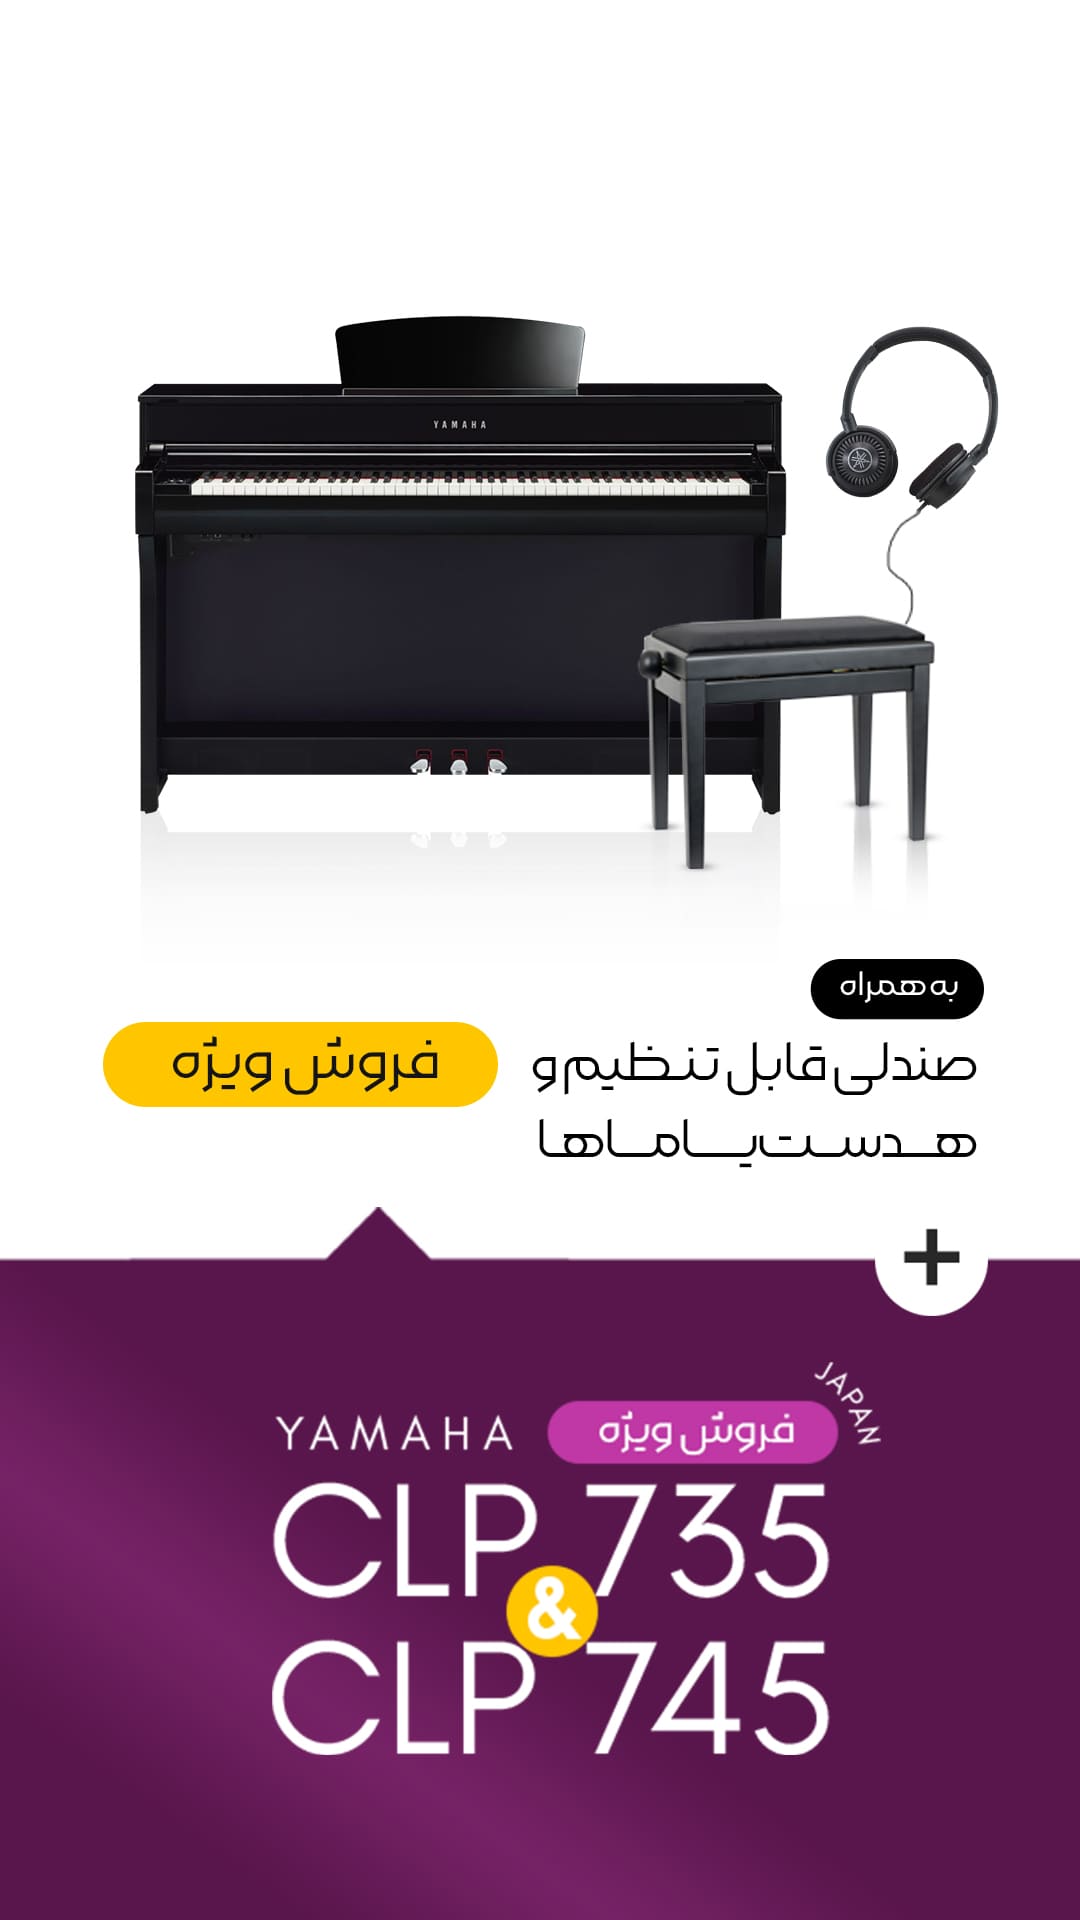 فروش ویژه پیانو یاماها